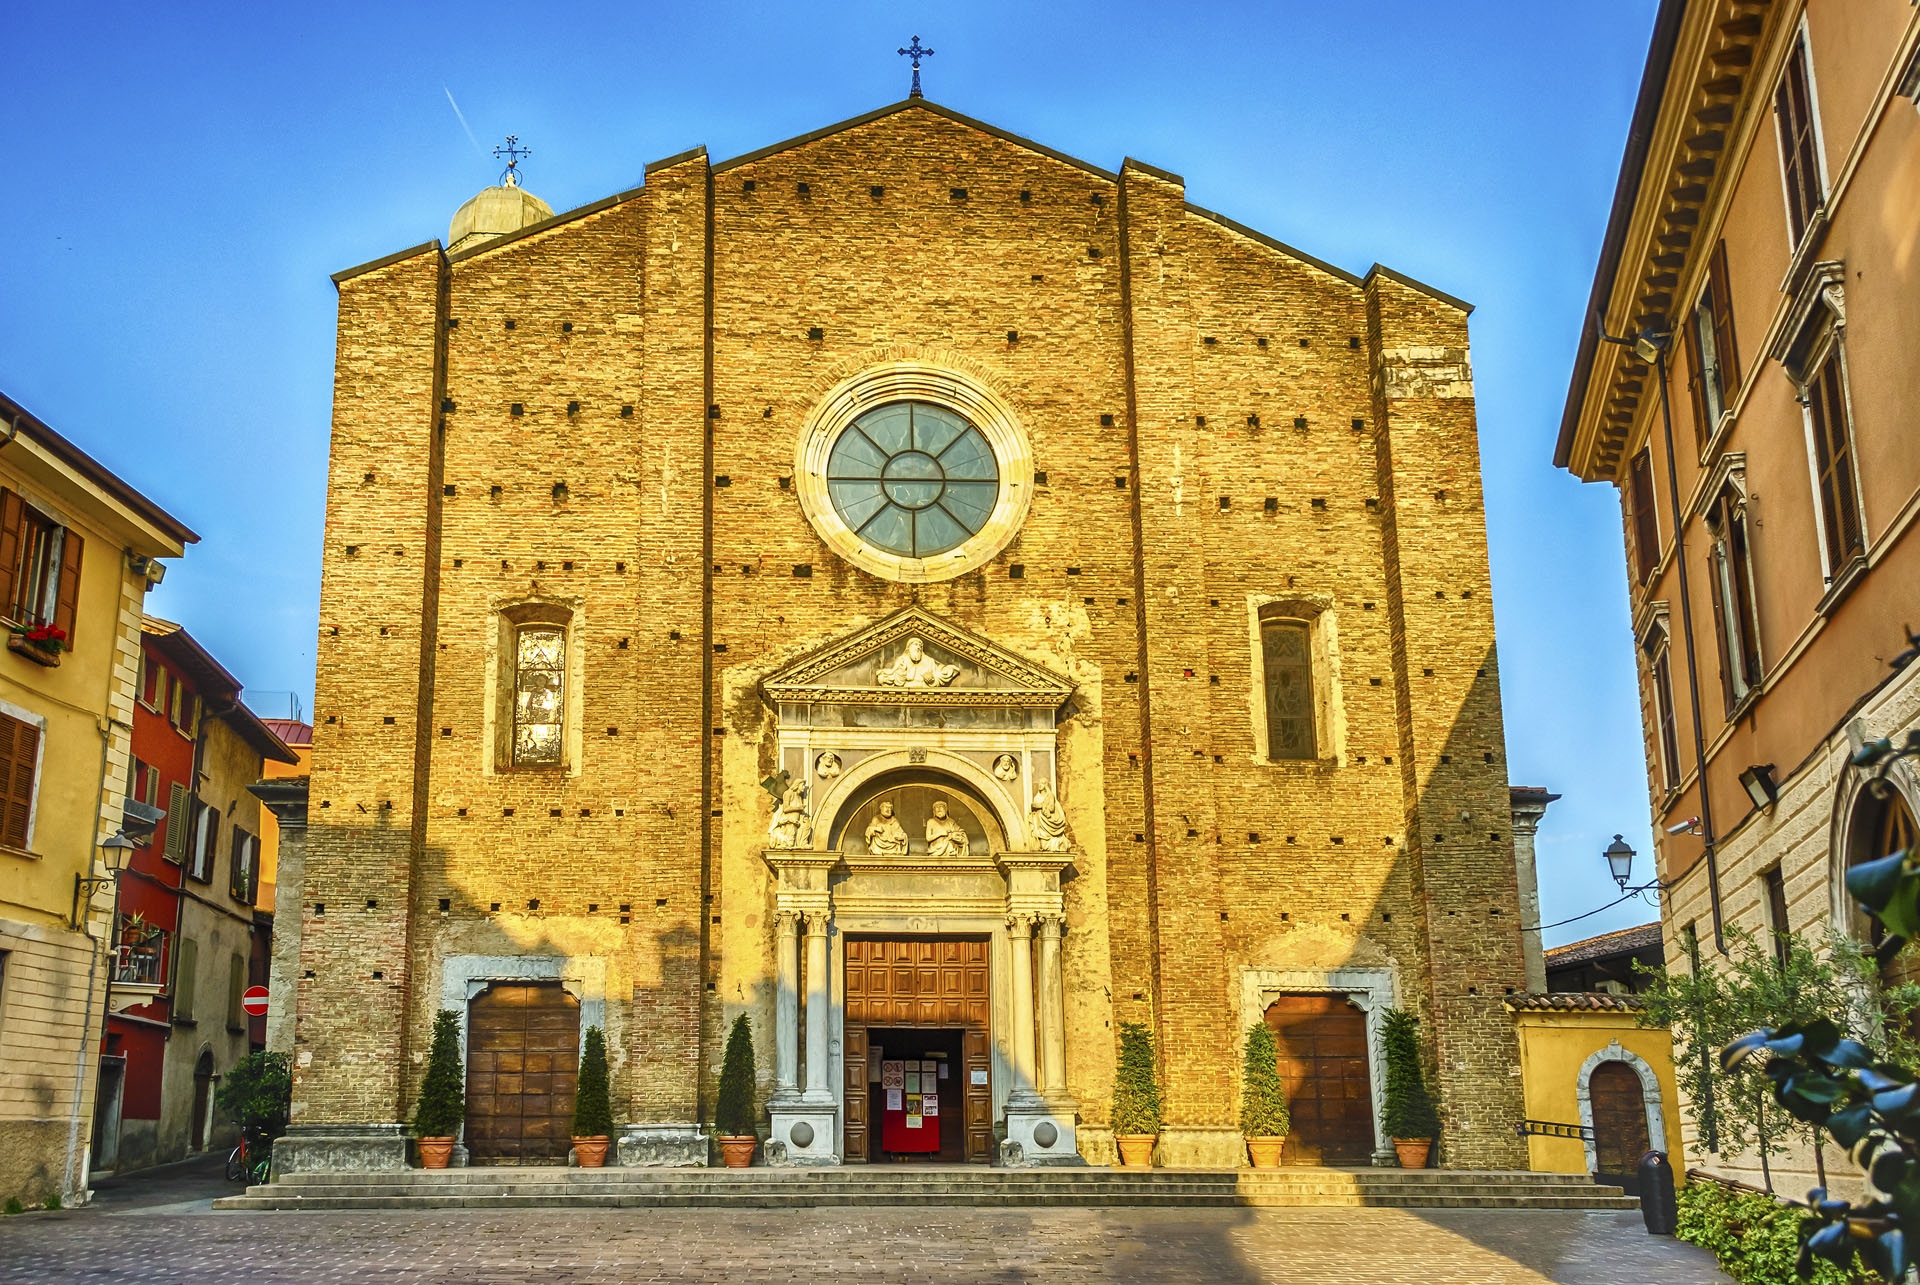 Facade of the Cathedral in Salo, Lake Garda, Italy